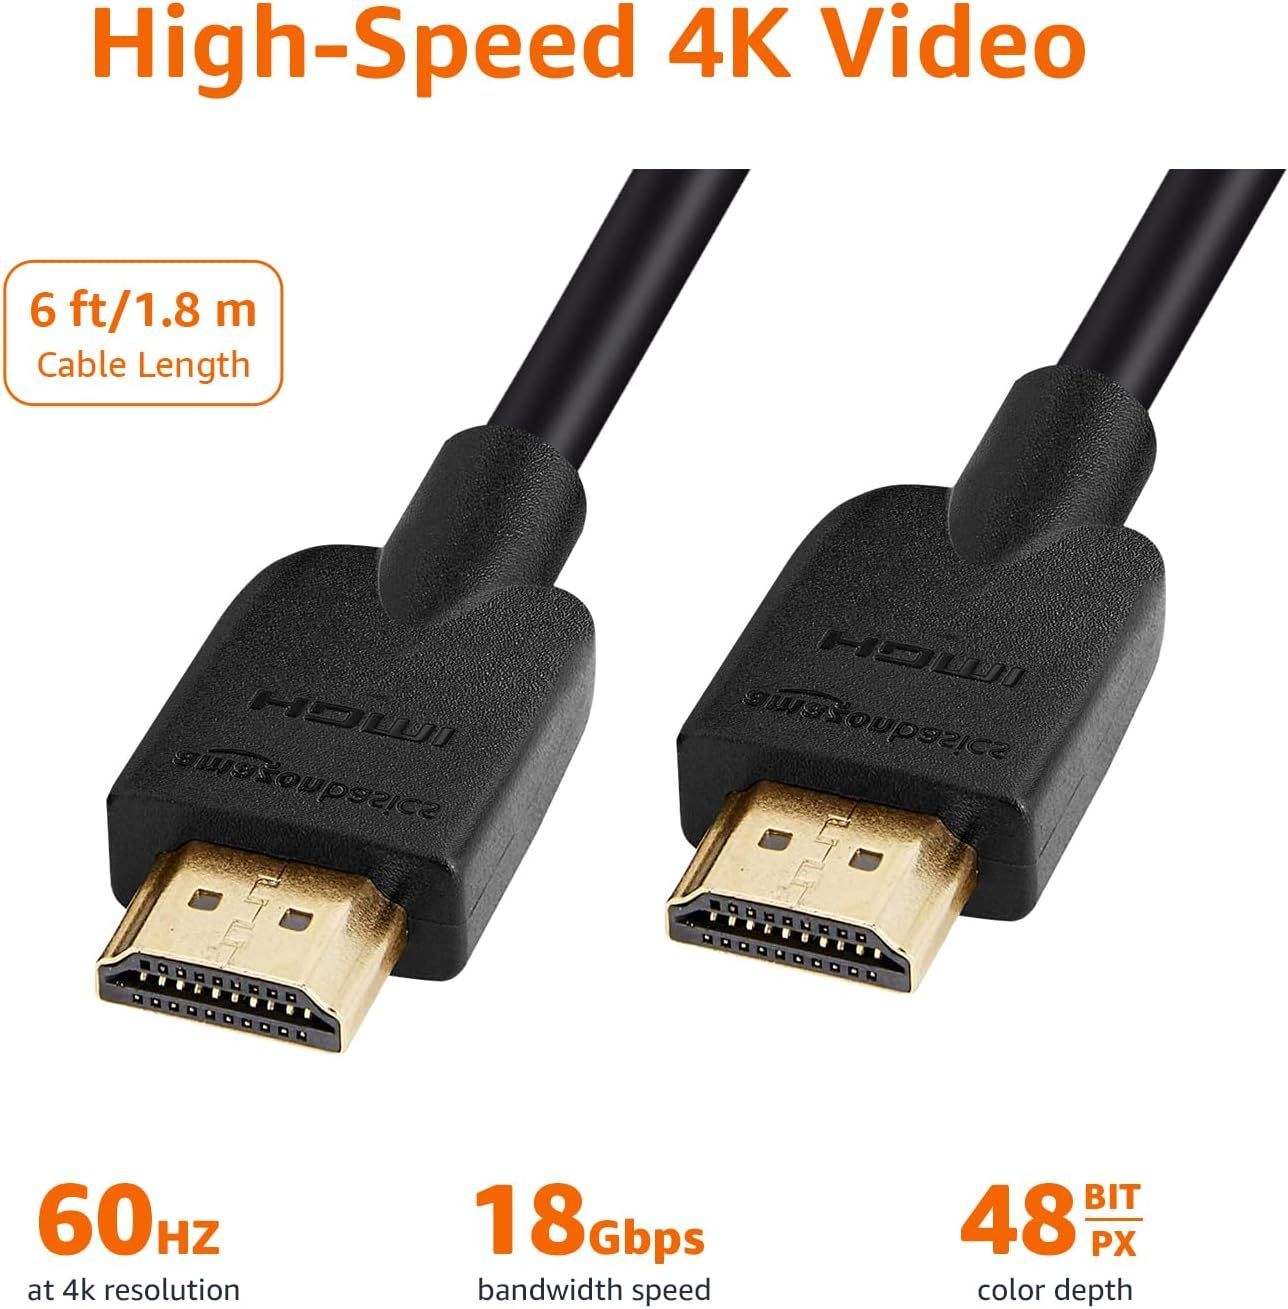 Amazonベーシック HDMI ケーブル ハイスピード 4K ARC対応 1.8m 3本セット（タイプAオス - タイプAオス）ブラック